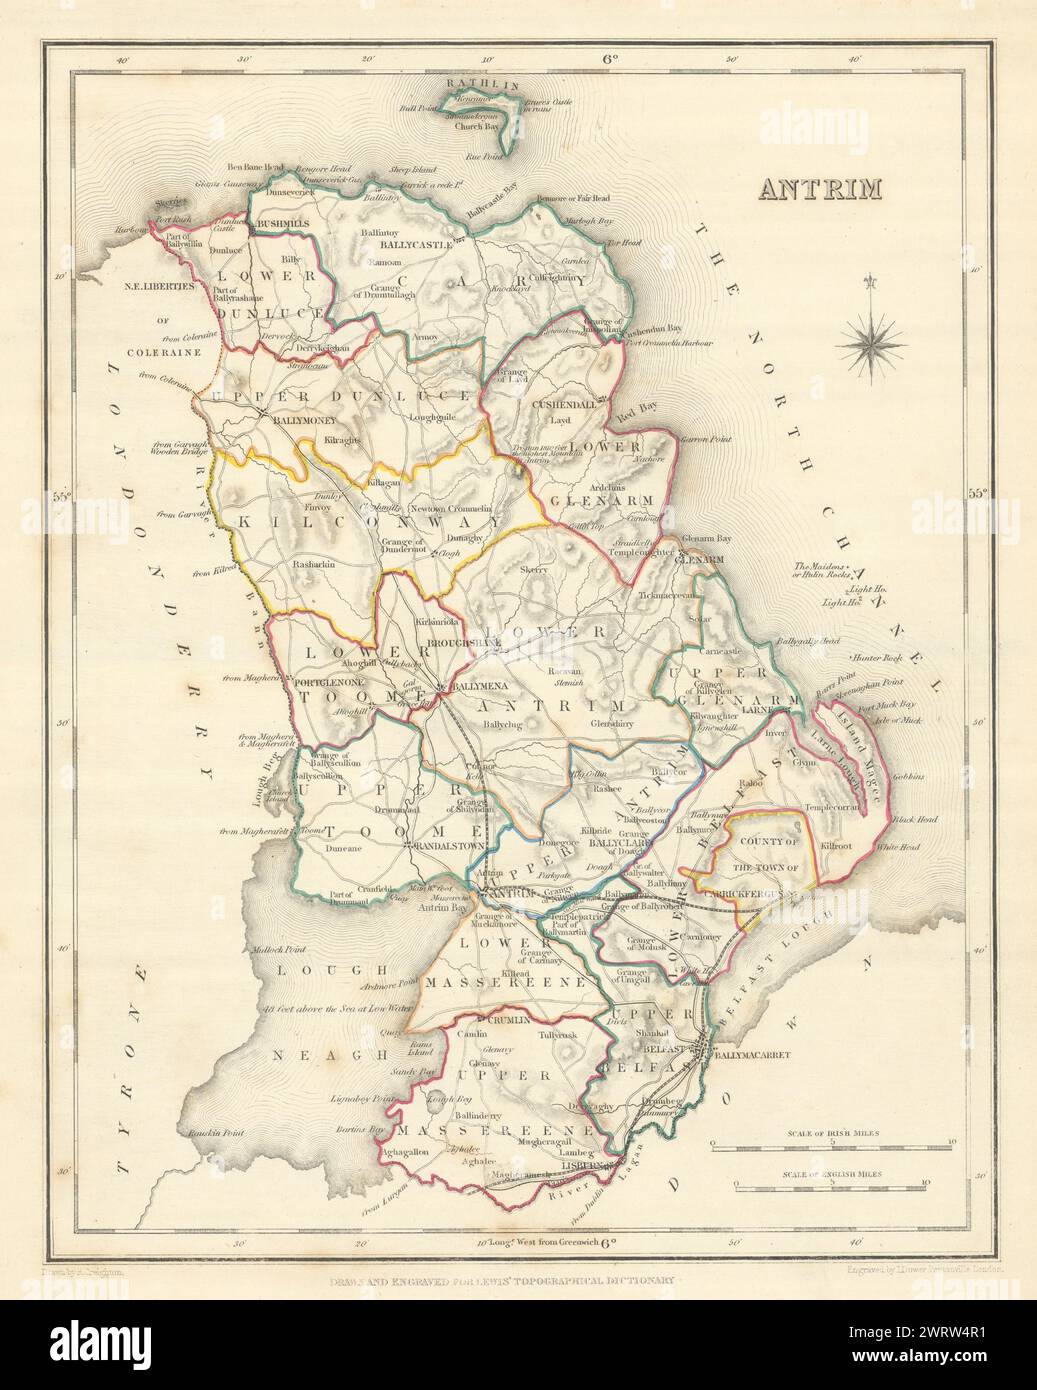 Mappa antica DELLA CONTEA DI ANTRIM per LEWIS di CREIGHTON & DOWER. Ulster 1850 anni Foto Stock